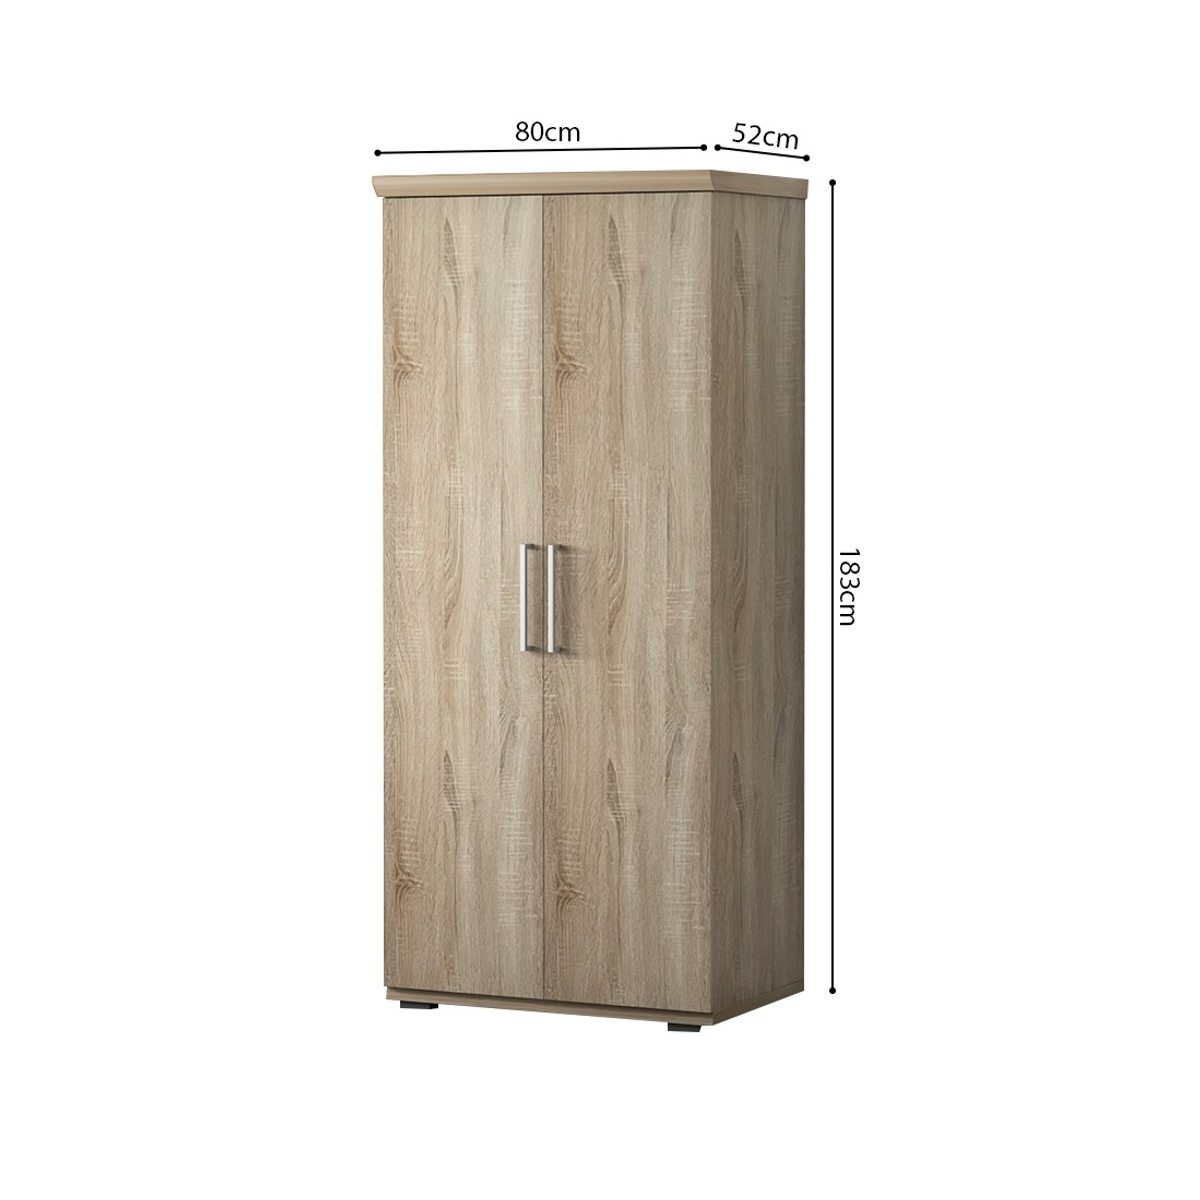 Interiax Kledingkast 'Mila' 2 deuren Sonoma (183x80x52cm)